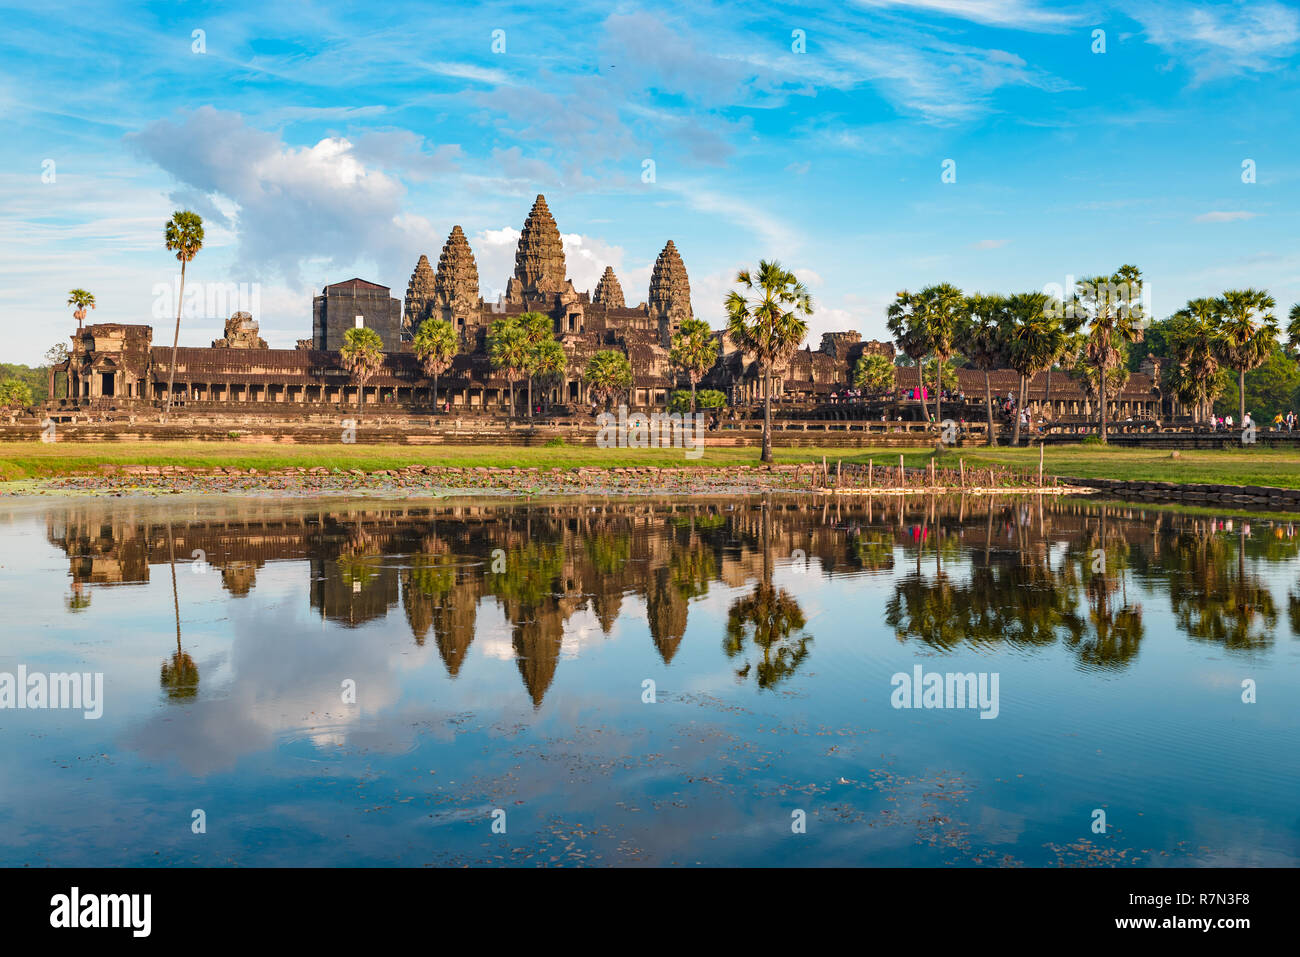 Angkor Wat sonnigen Tag blauer Himmel Hauptfassade Reflexion über Wasser Teich Abendlicht. Weltberühmte Tempel in Kambodscha, touristische Reiseziel. Stockfoto